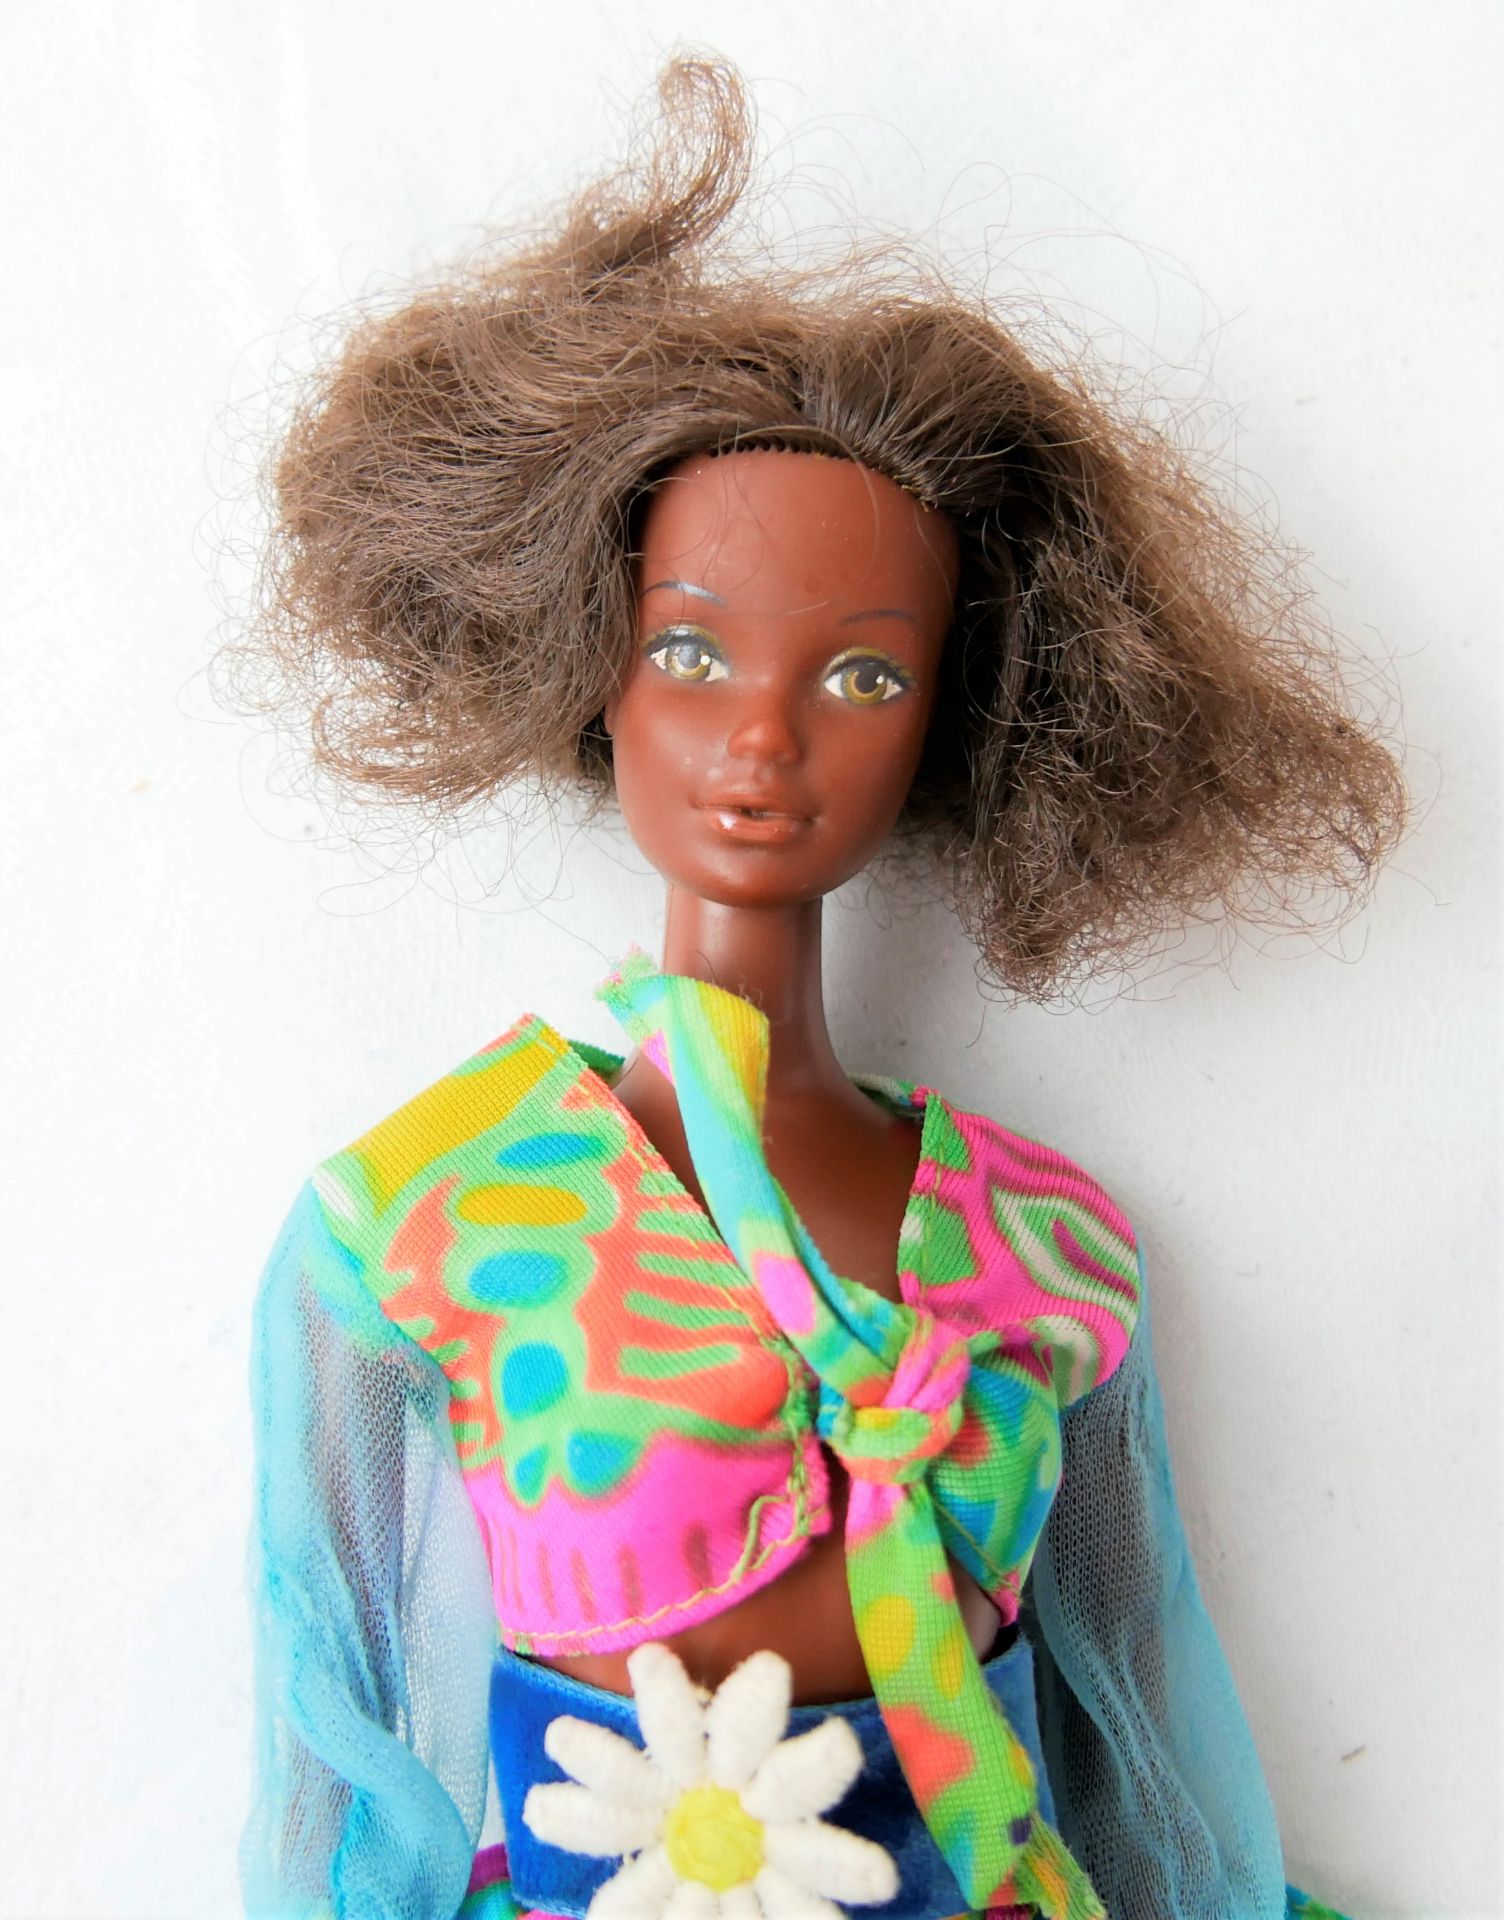 dunkelhäutige Barbie von 1966, Mattel, made in Taiwan, bespielter Zustand und Lagerspuren vorhanden - Bild 3 aus 3